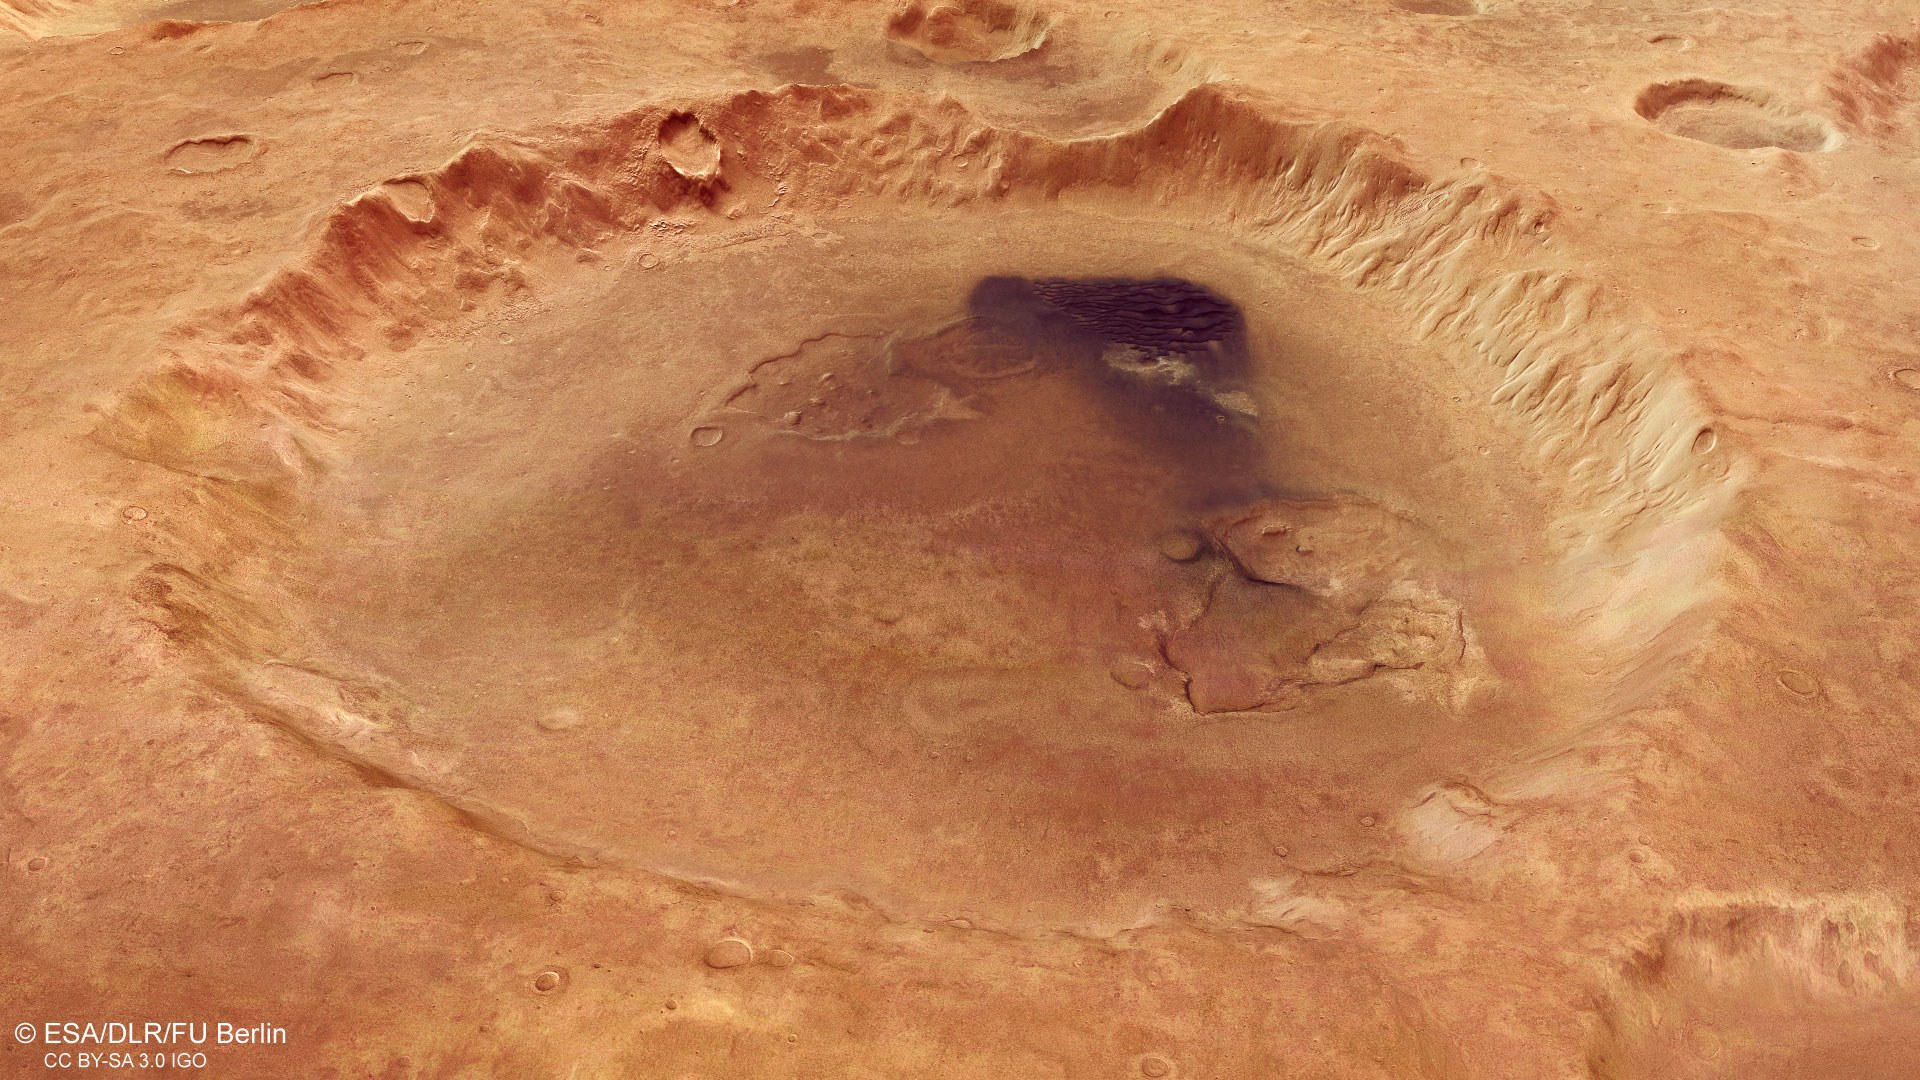 Perspektivische Ansicht des Kraters Neukum auf dem Mars